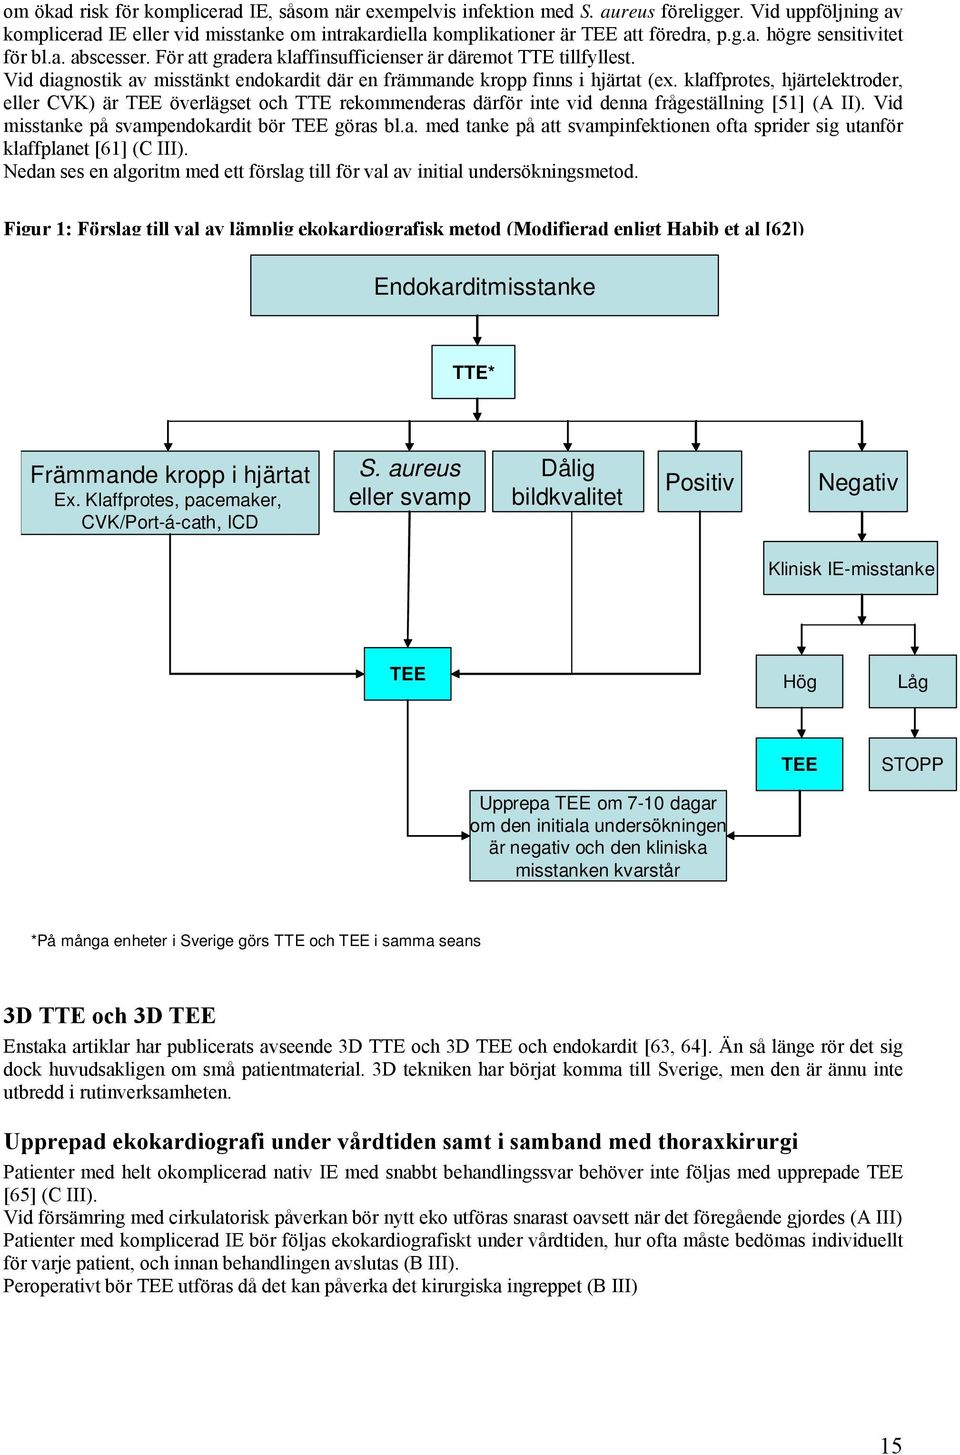 klaffprotes, hjärtelektroder, eller CVK) är TEE överlägset och TTE rekommenderas därför inte vid denna frågeställning [51] (A II). Vid misstanke på svampendokardit bör TEE göras bl.a. med tanke på att svampinfektionen ofta sprider sig utanför klaffplanet [61] (C III).